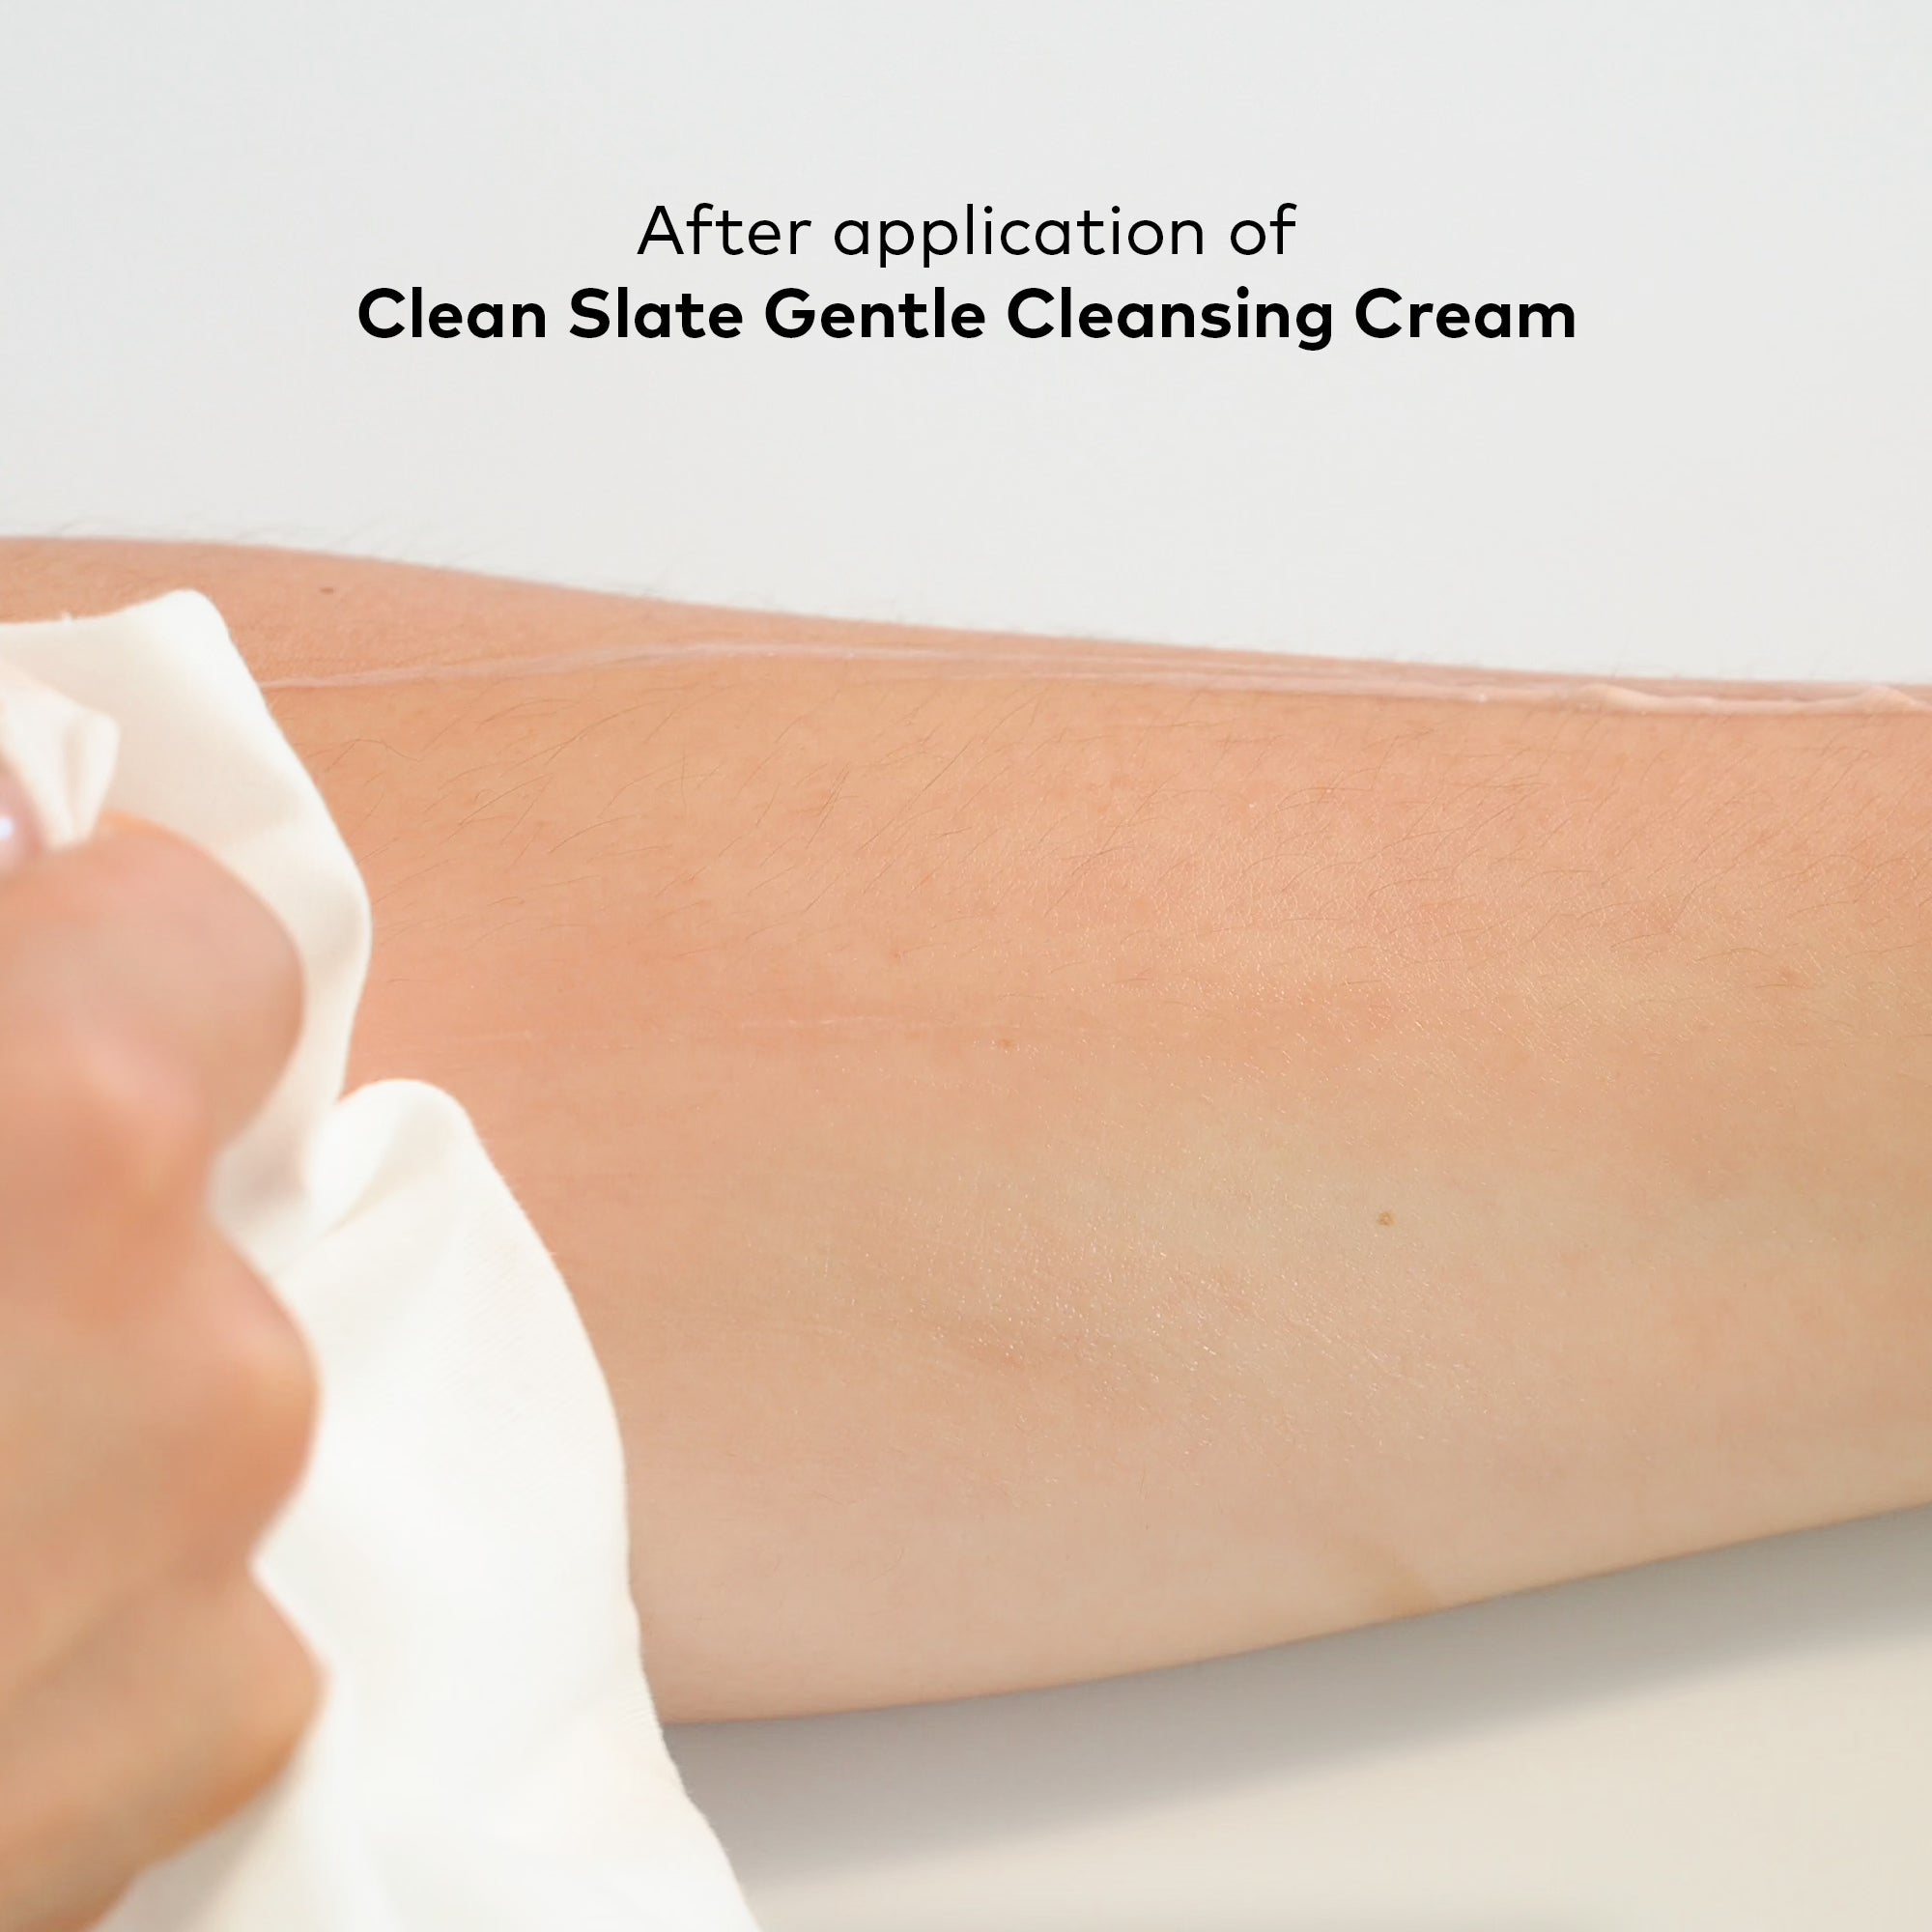 Onekind Clean Slate Gentle Cleansing Cream